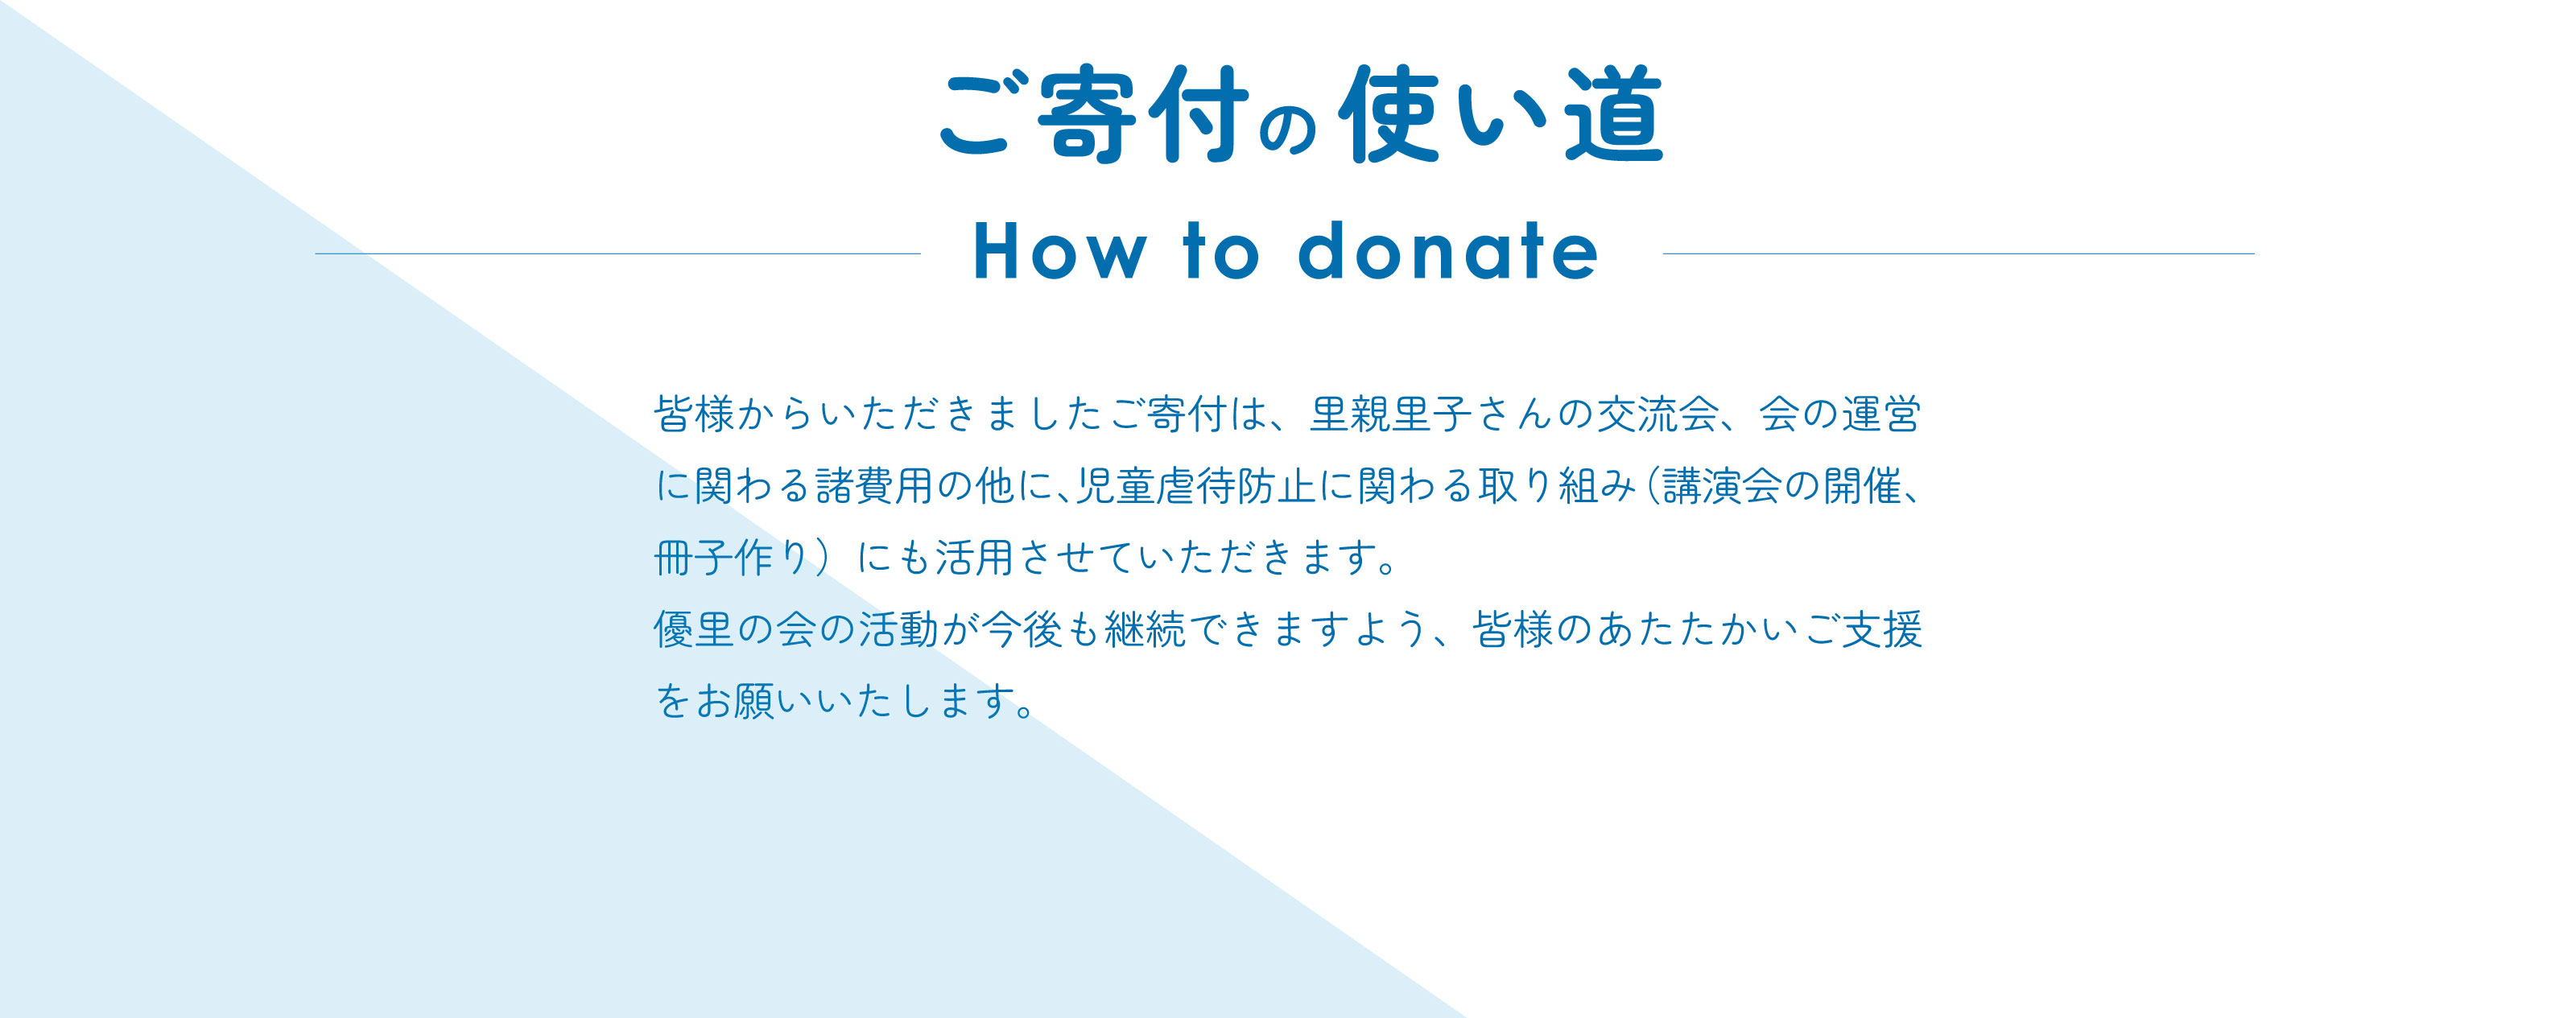 ご寄付の使い道 How to donate 皆様からいただきましたご寄付は、里親里子さんの交流会、会の運営に関わる諸費用の他に、児童虐待防止に関わる取り組み（講演会の開催、冊子作り）にも活用させていただきます。優里の会の活動が今後も継続できますよう、皆様のあたたかいご支援をお願いいたします。